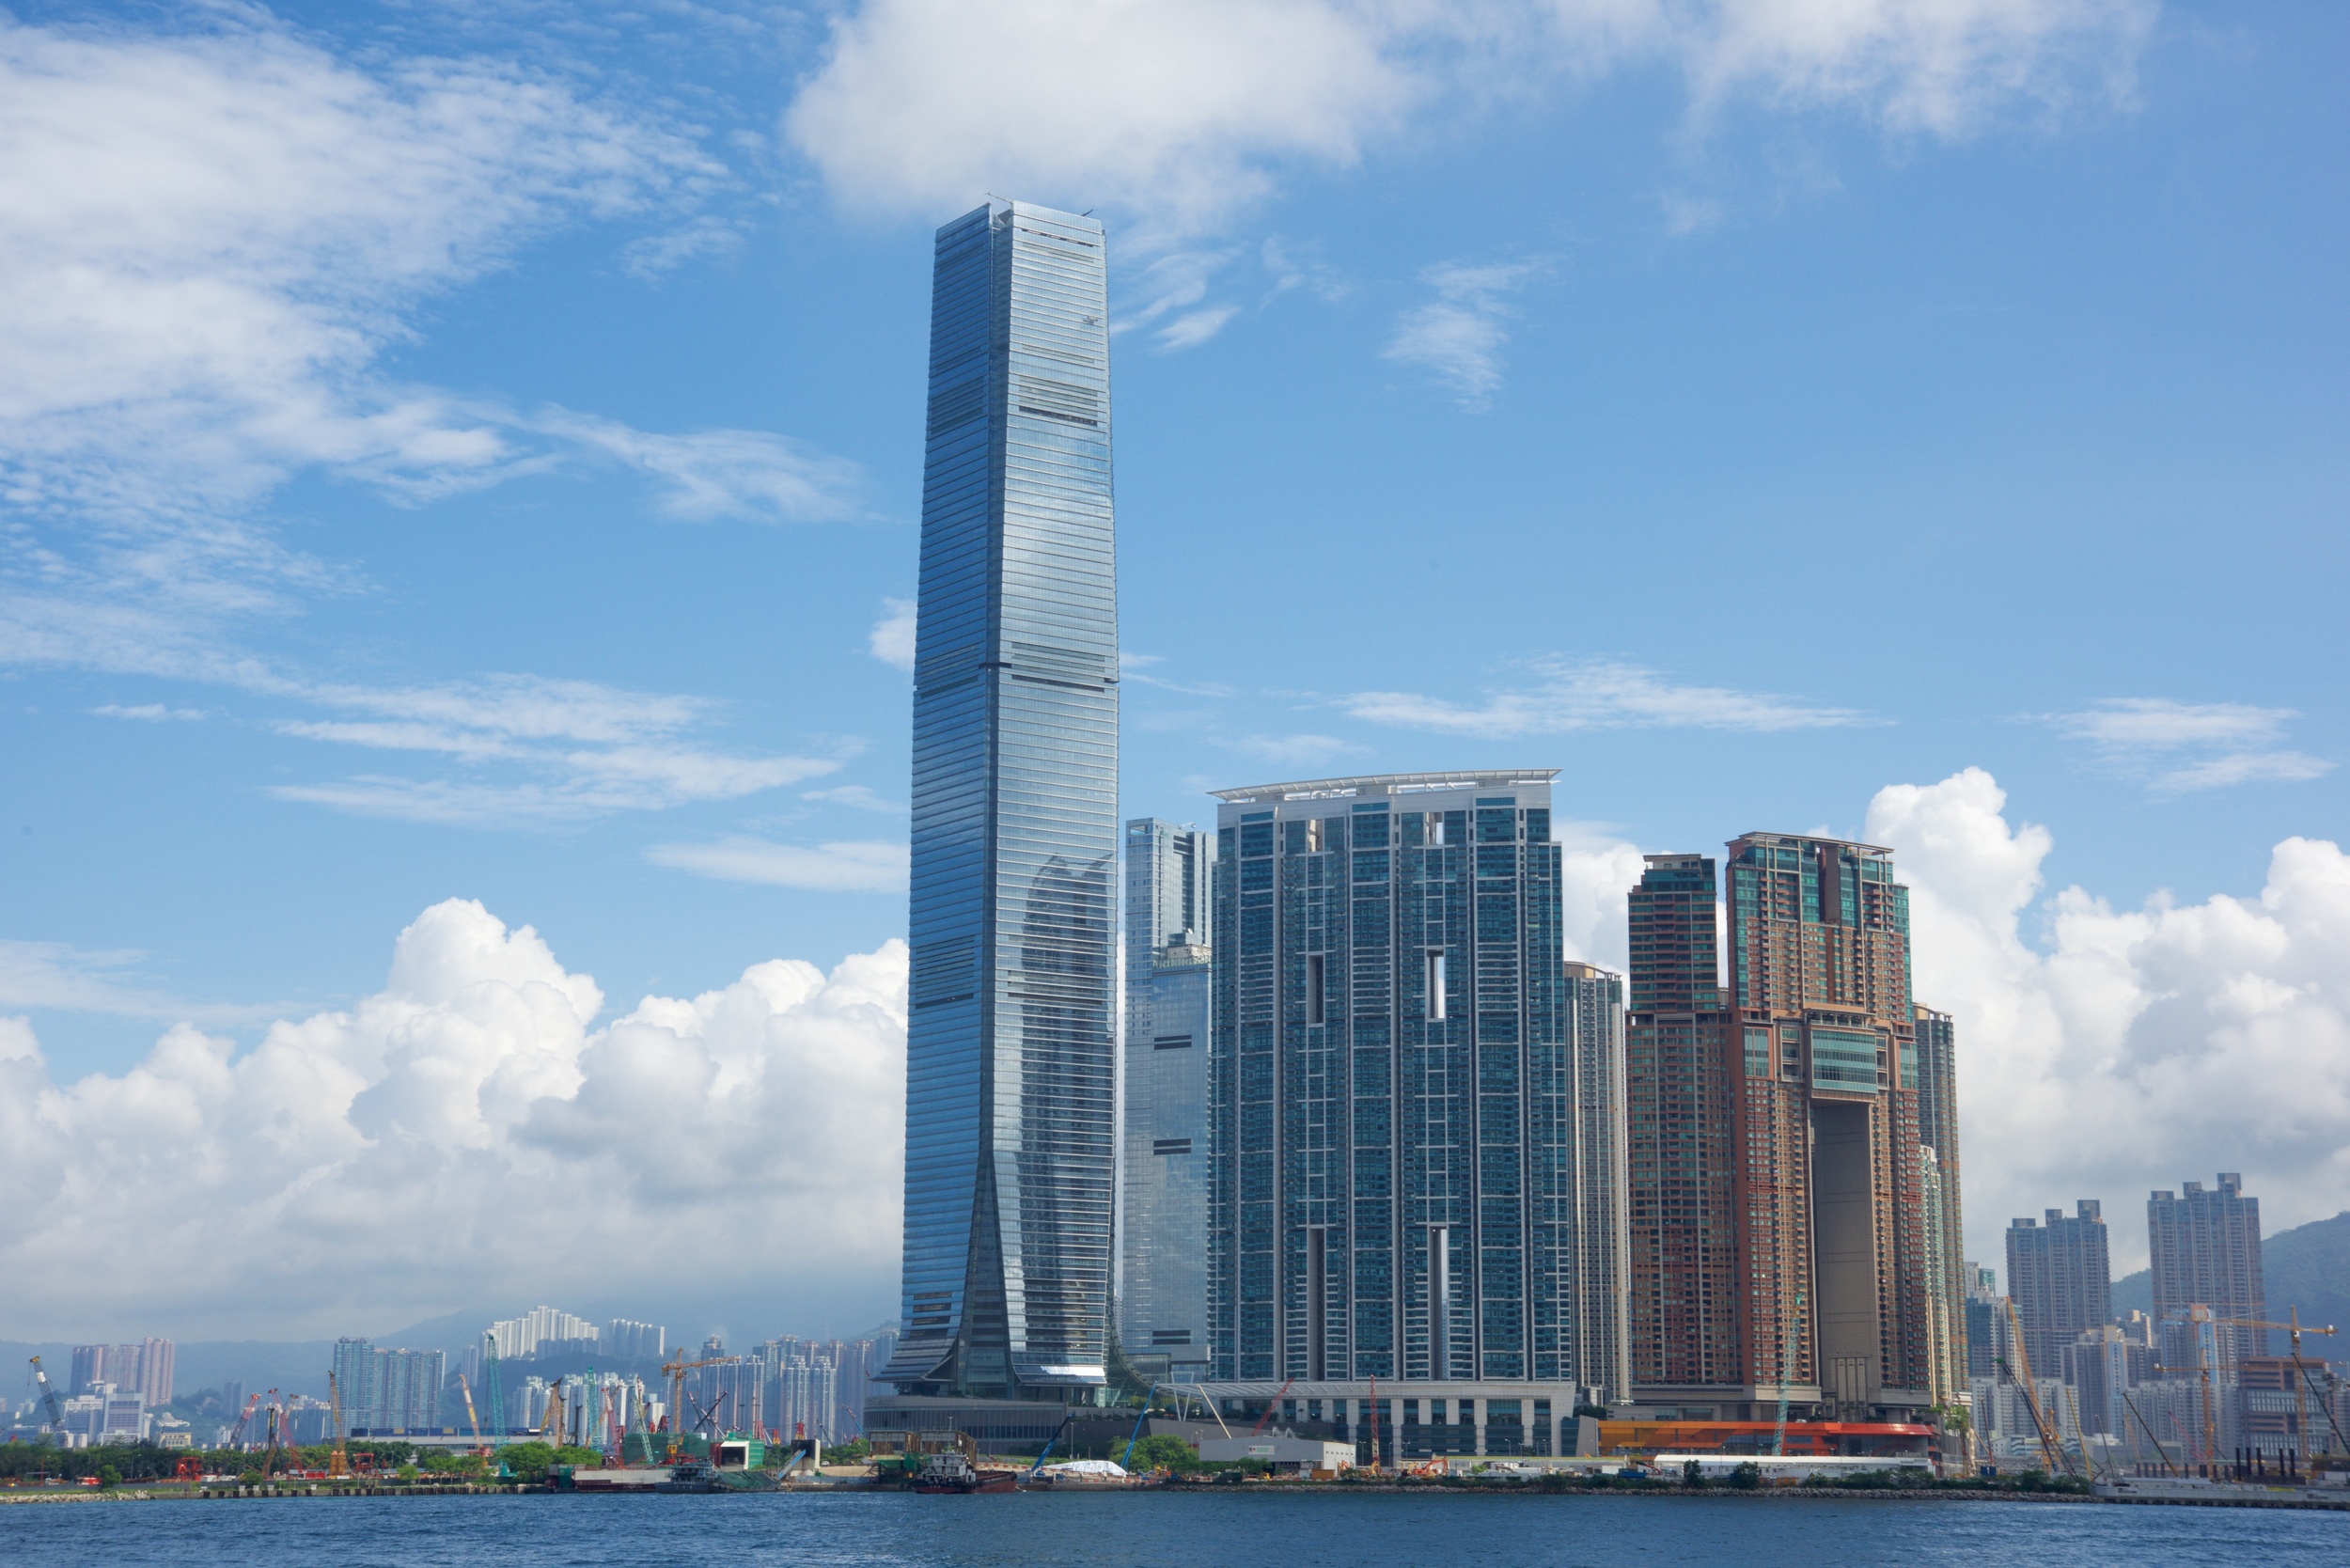  International Commerce Centre -&nbsp;tallest building in&nbsp;Hong Kong 